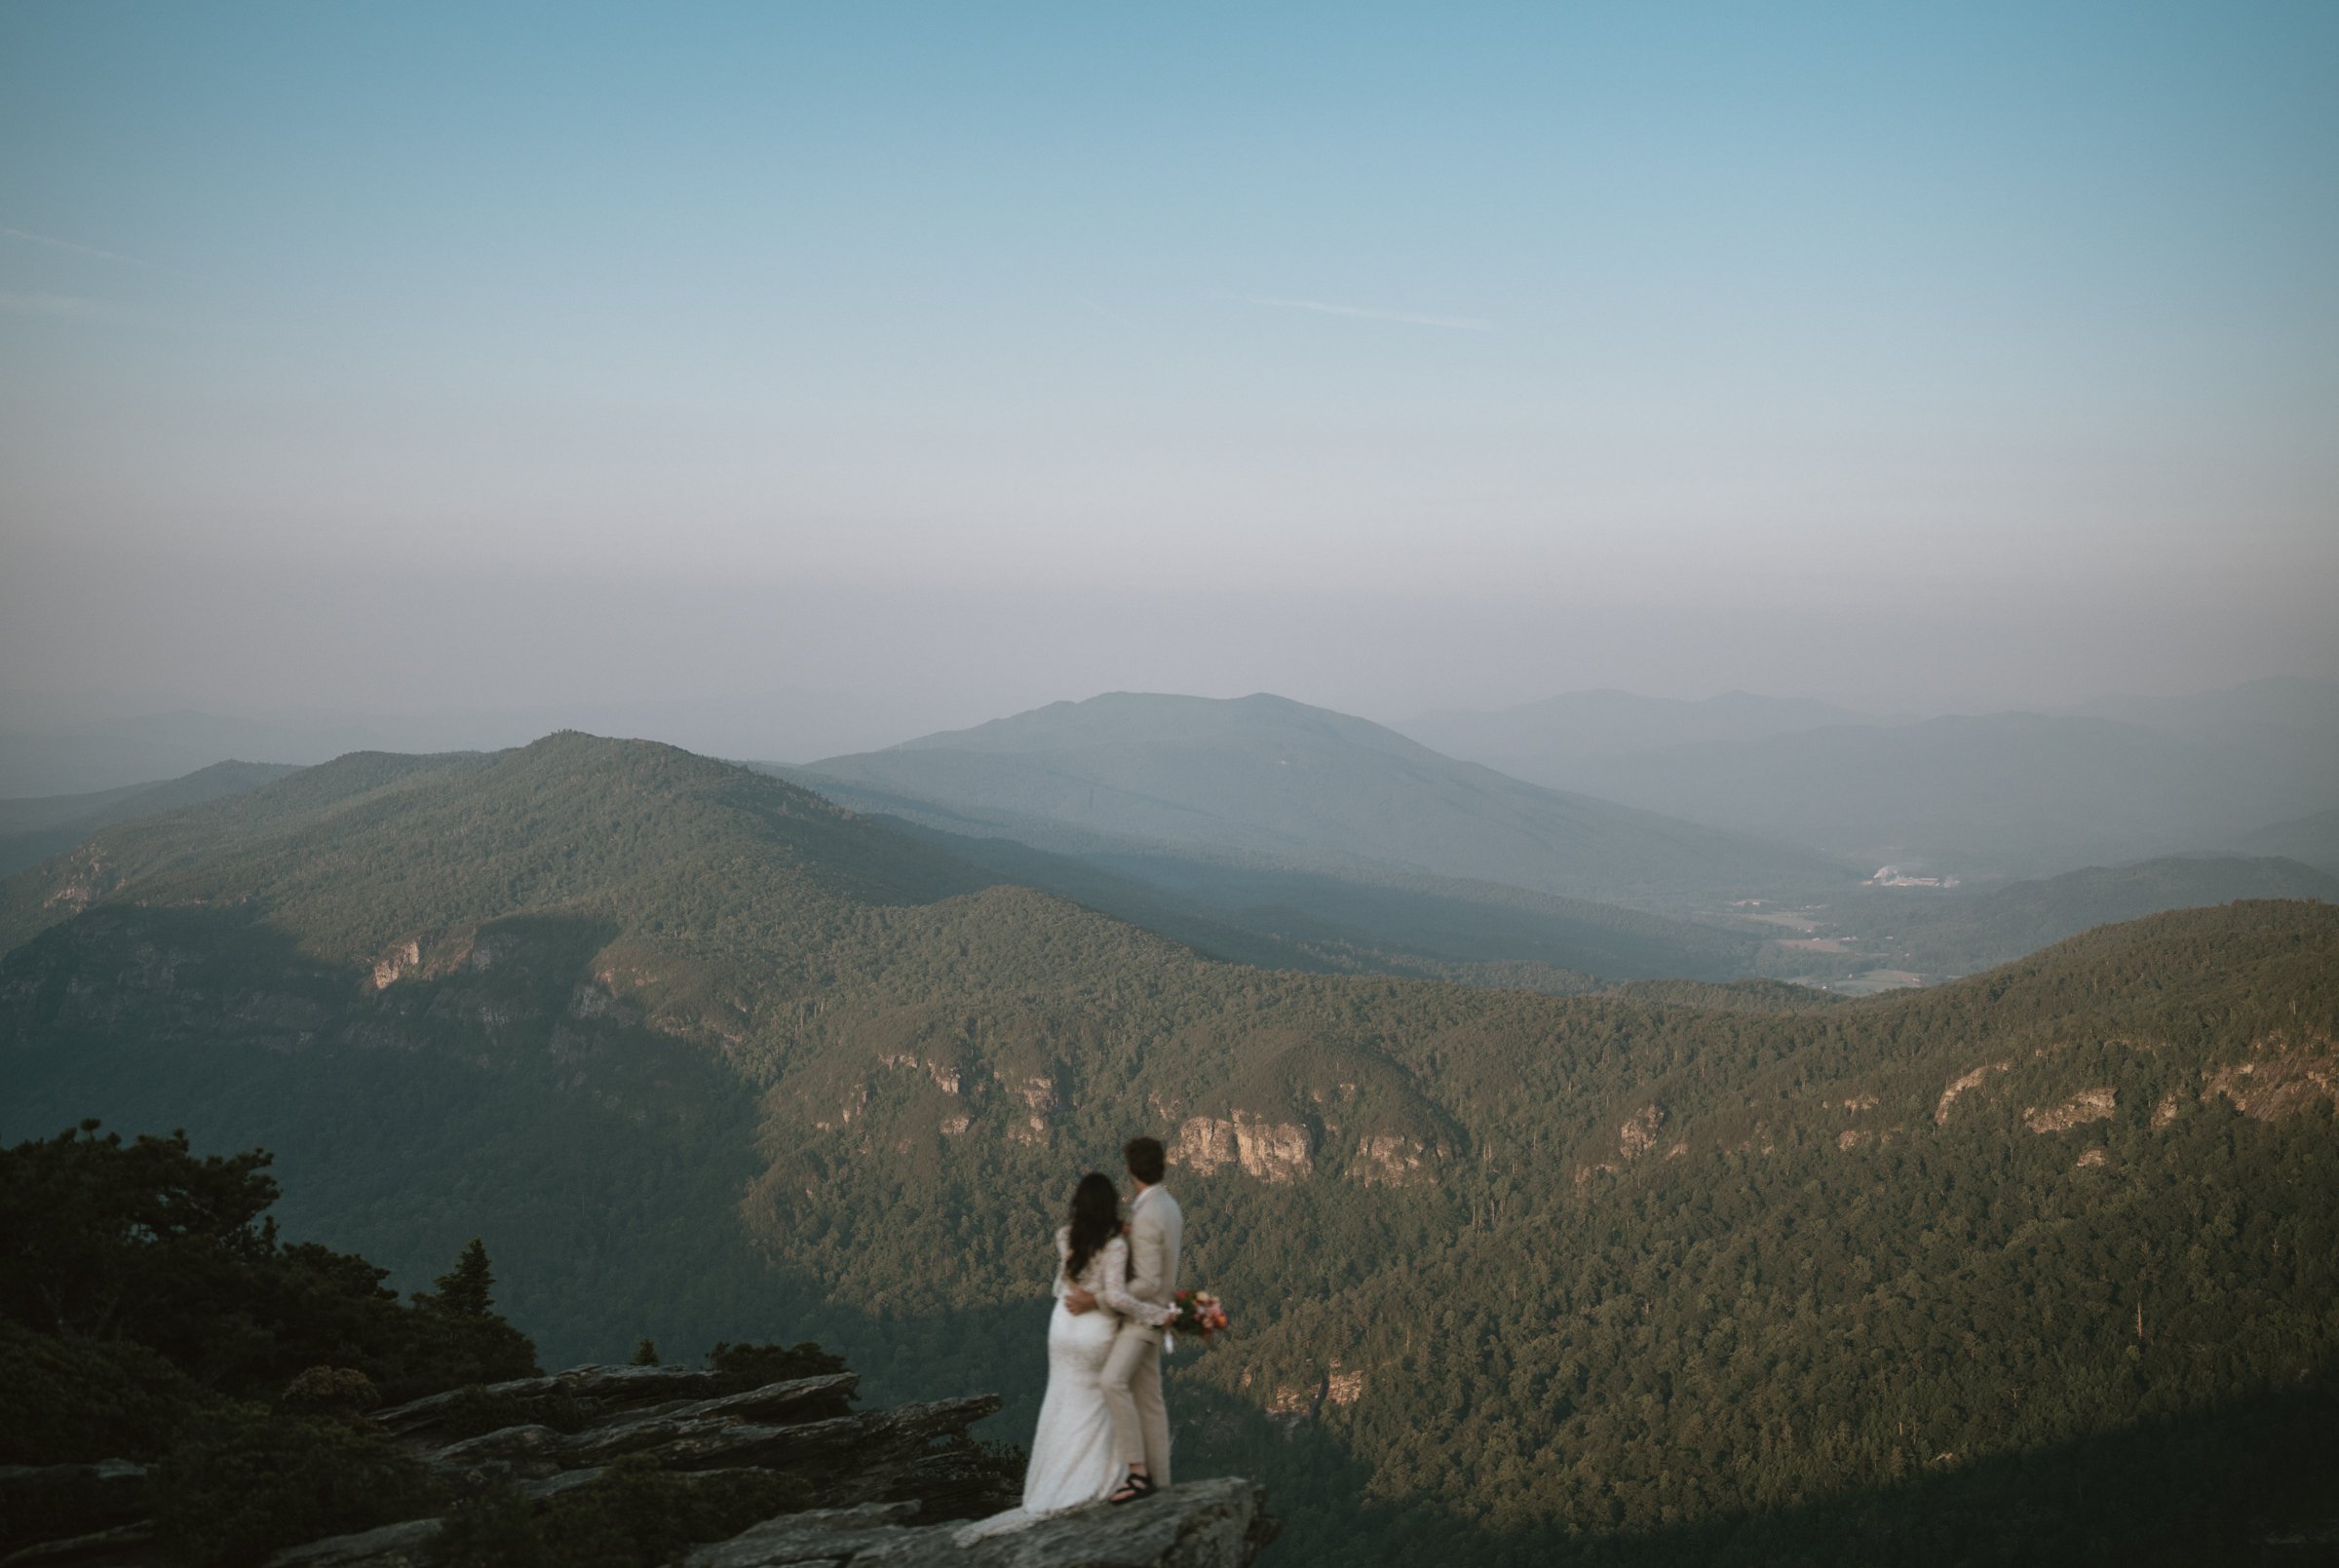 hawksbill-mountain-trail-elopement-asheville-elopement-photographer-102.jpg